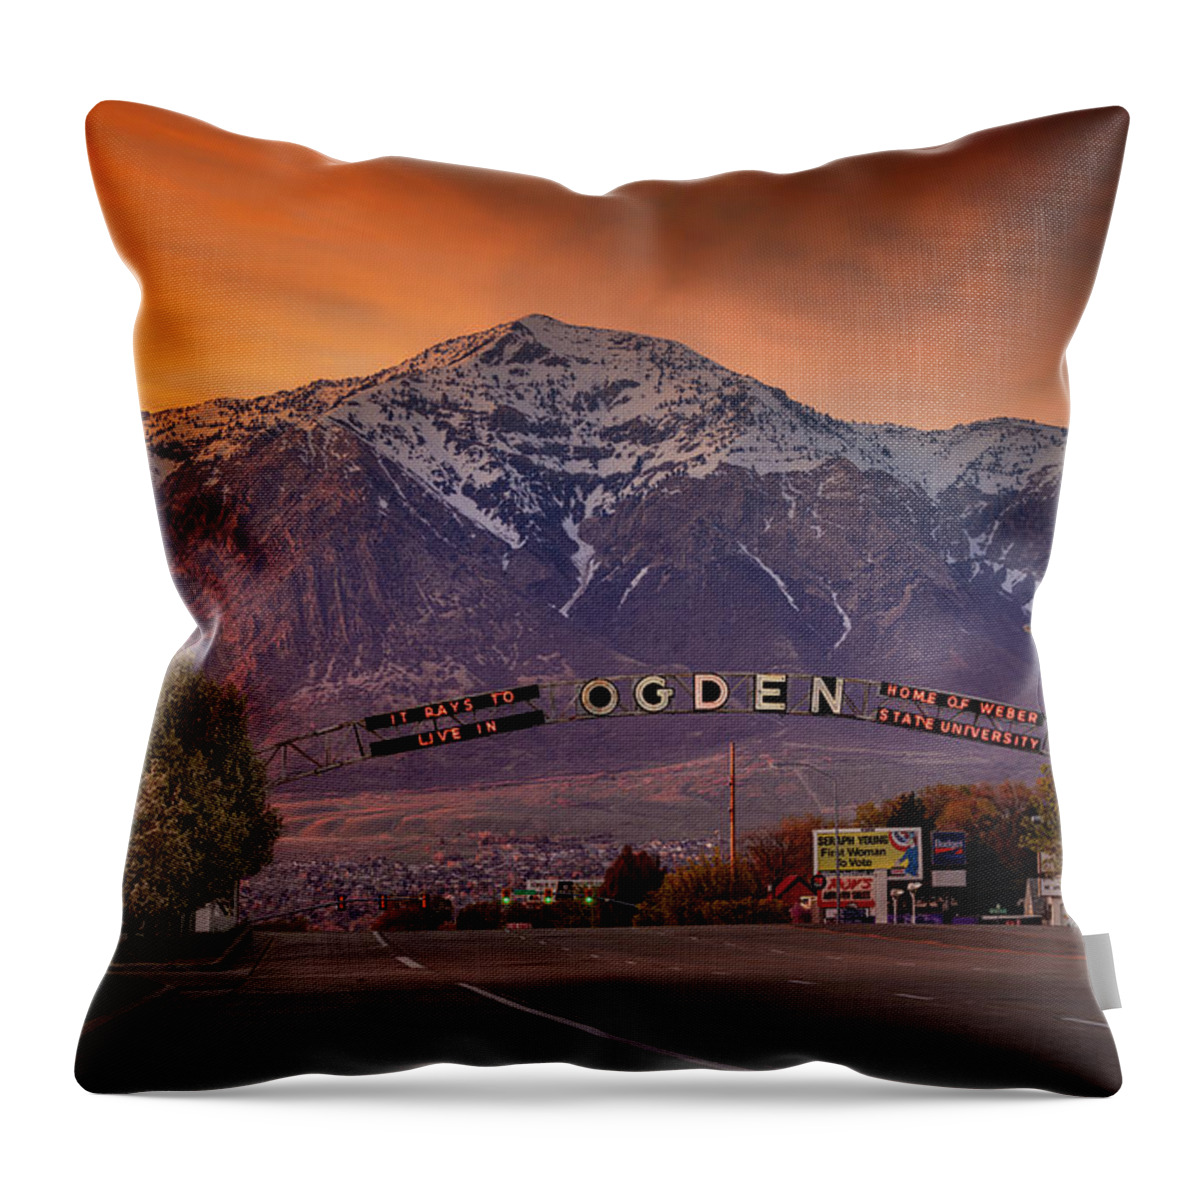 Ogden Throw Pillow featuring the photograph Ogden City Sunset by Michael Ash